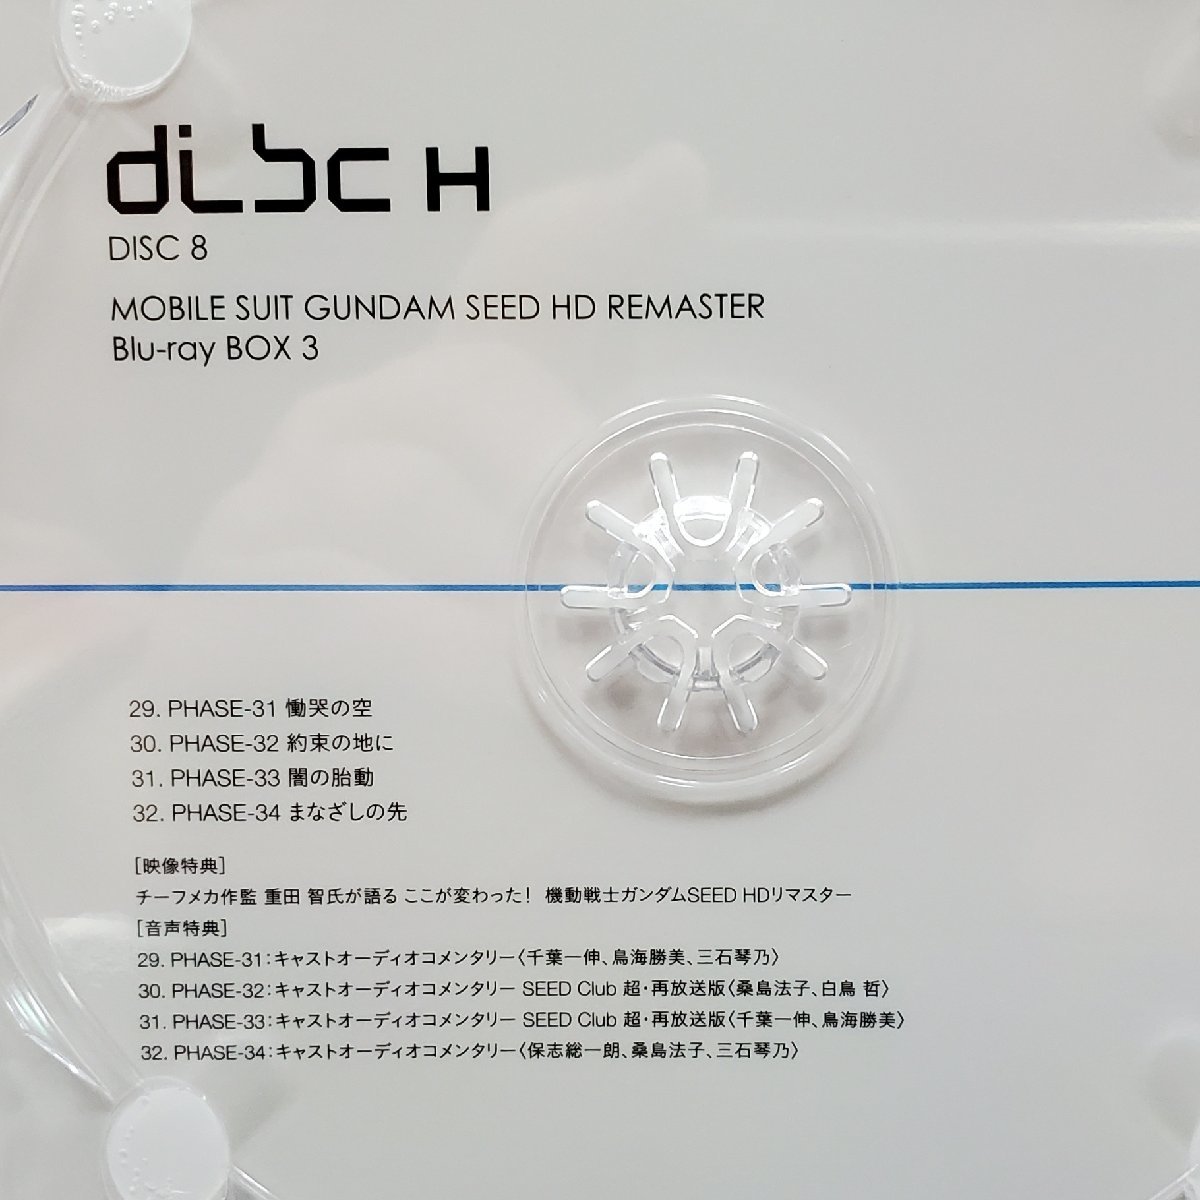 【宝蔵】機動戦士ガンダム MOBILE SUIT GUNDAM SEED HD REMASTER ブルーレイBOX3 DISC7-9 初回限定版 中古品_画像7